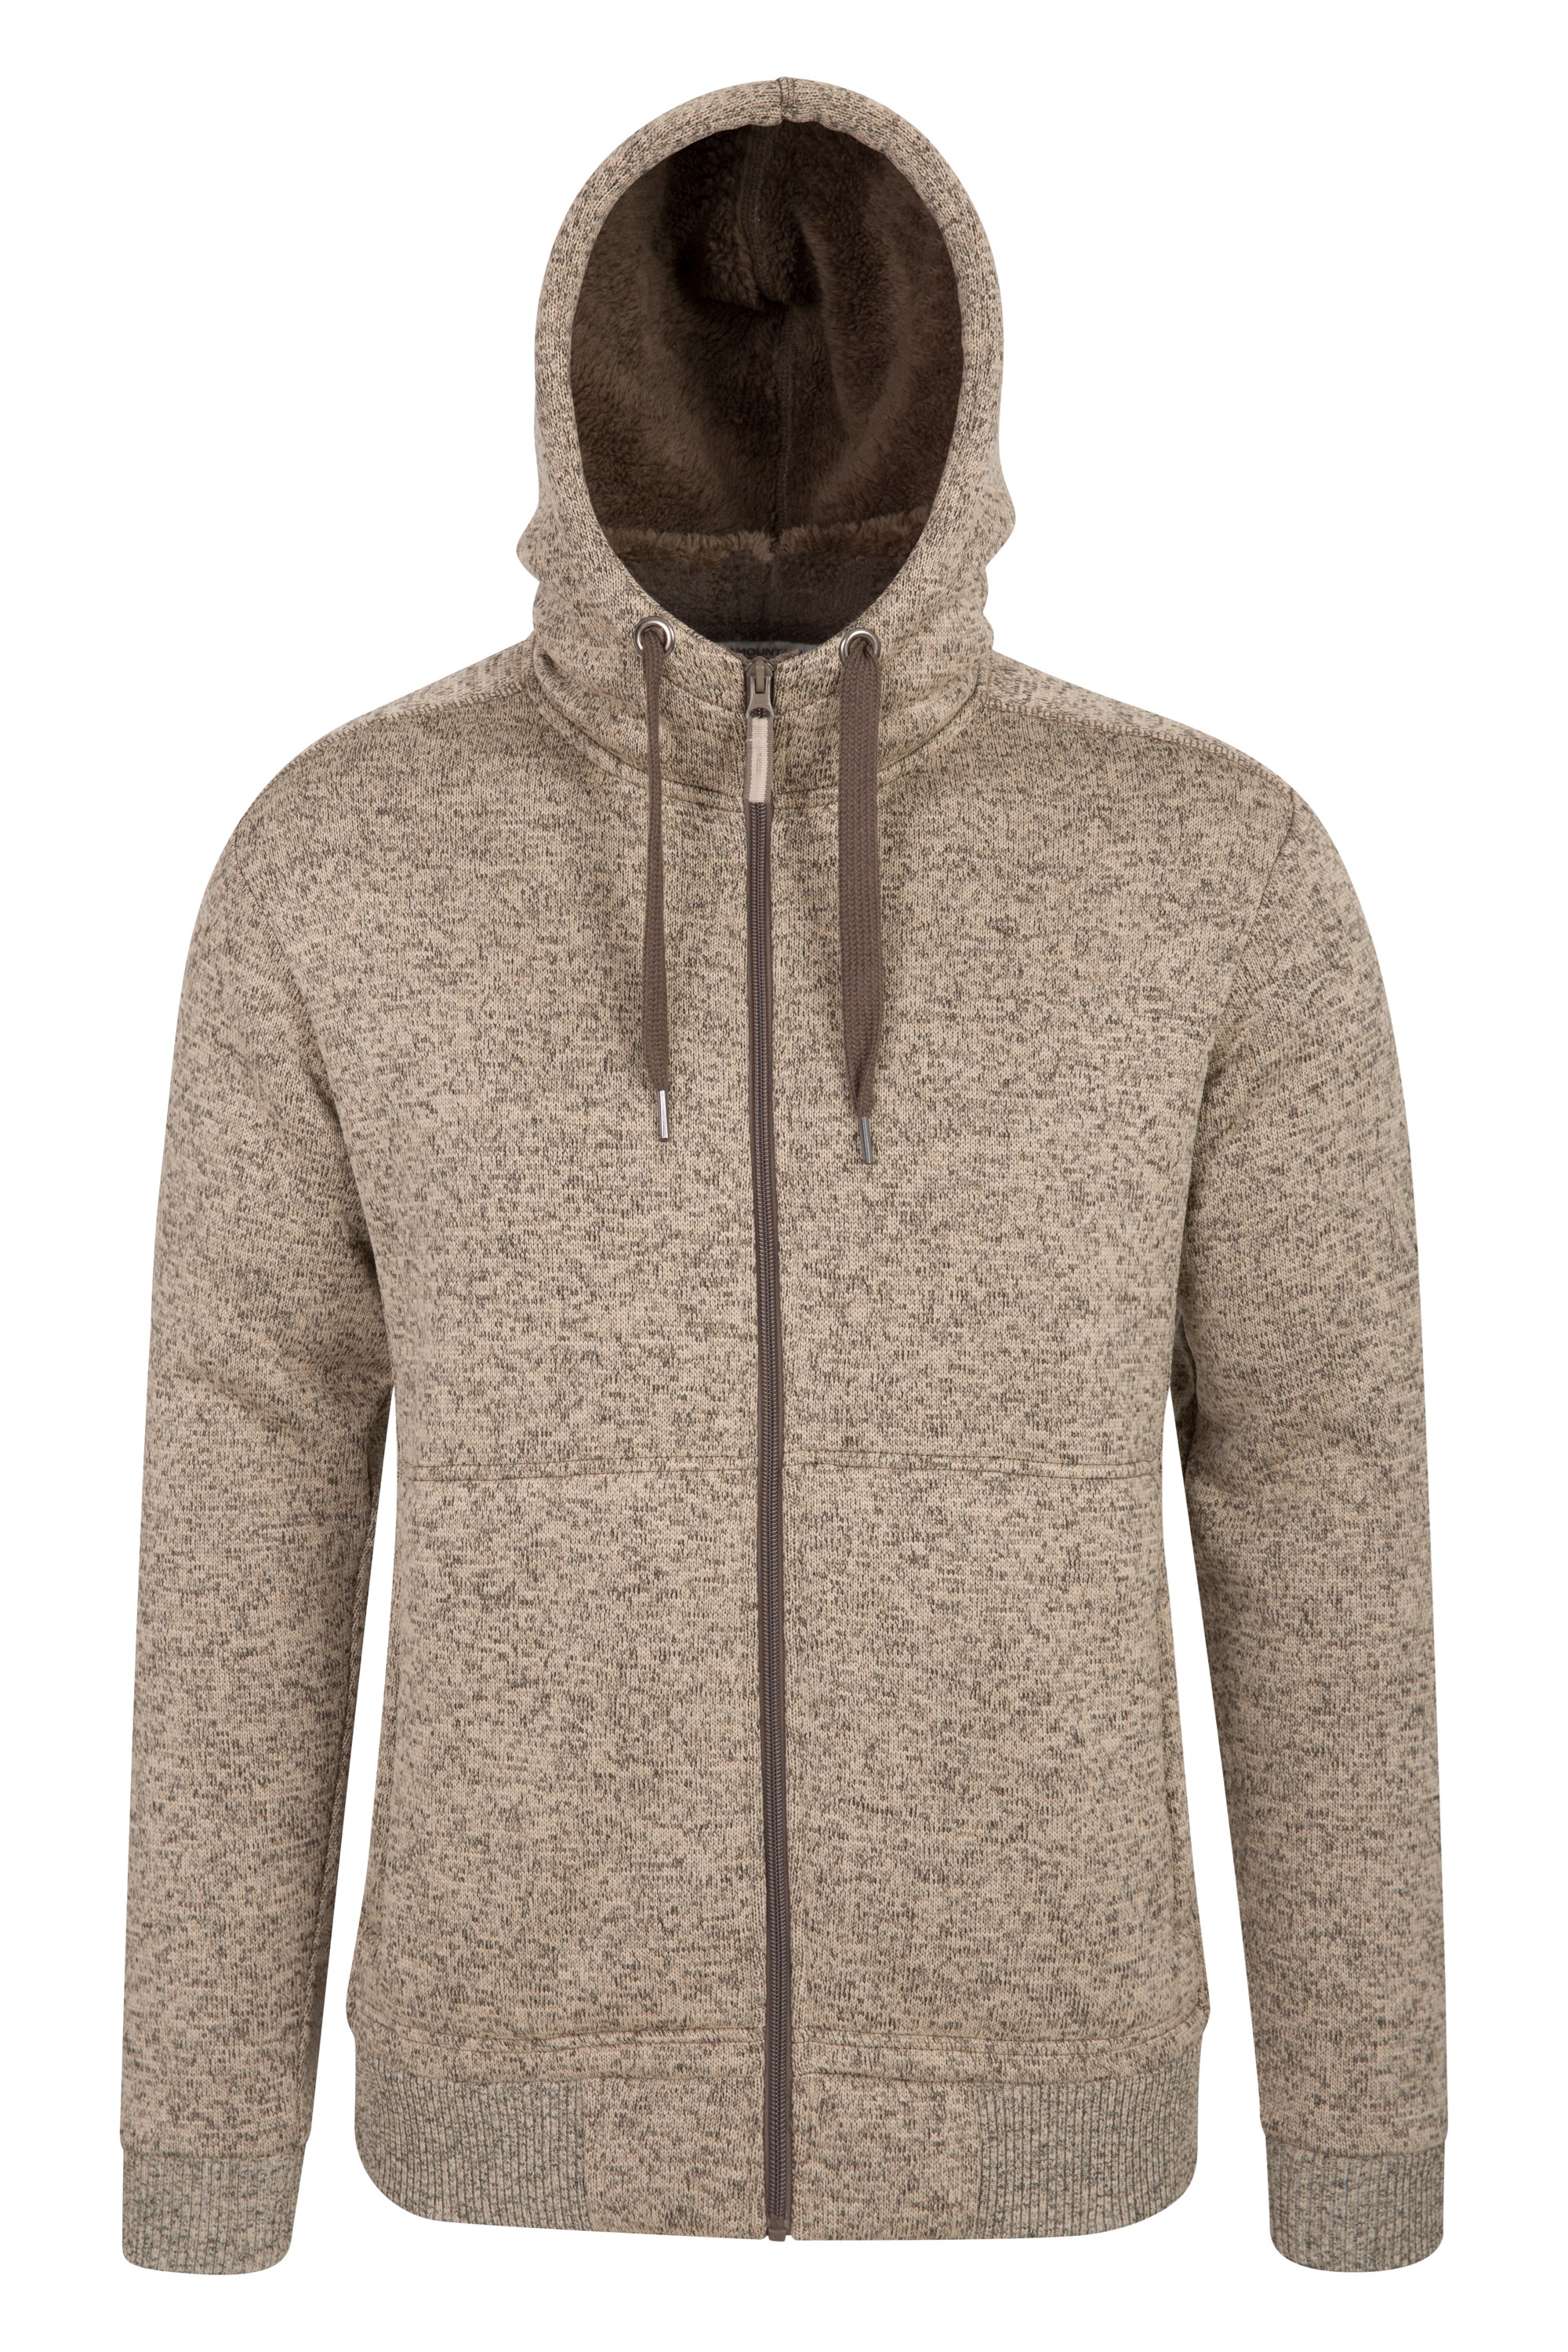 ARTFFEL Mens Casual Fleece Line Zip Up 3D Print Relaxed Fit Hooded Sweatshirt Coat